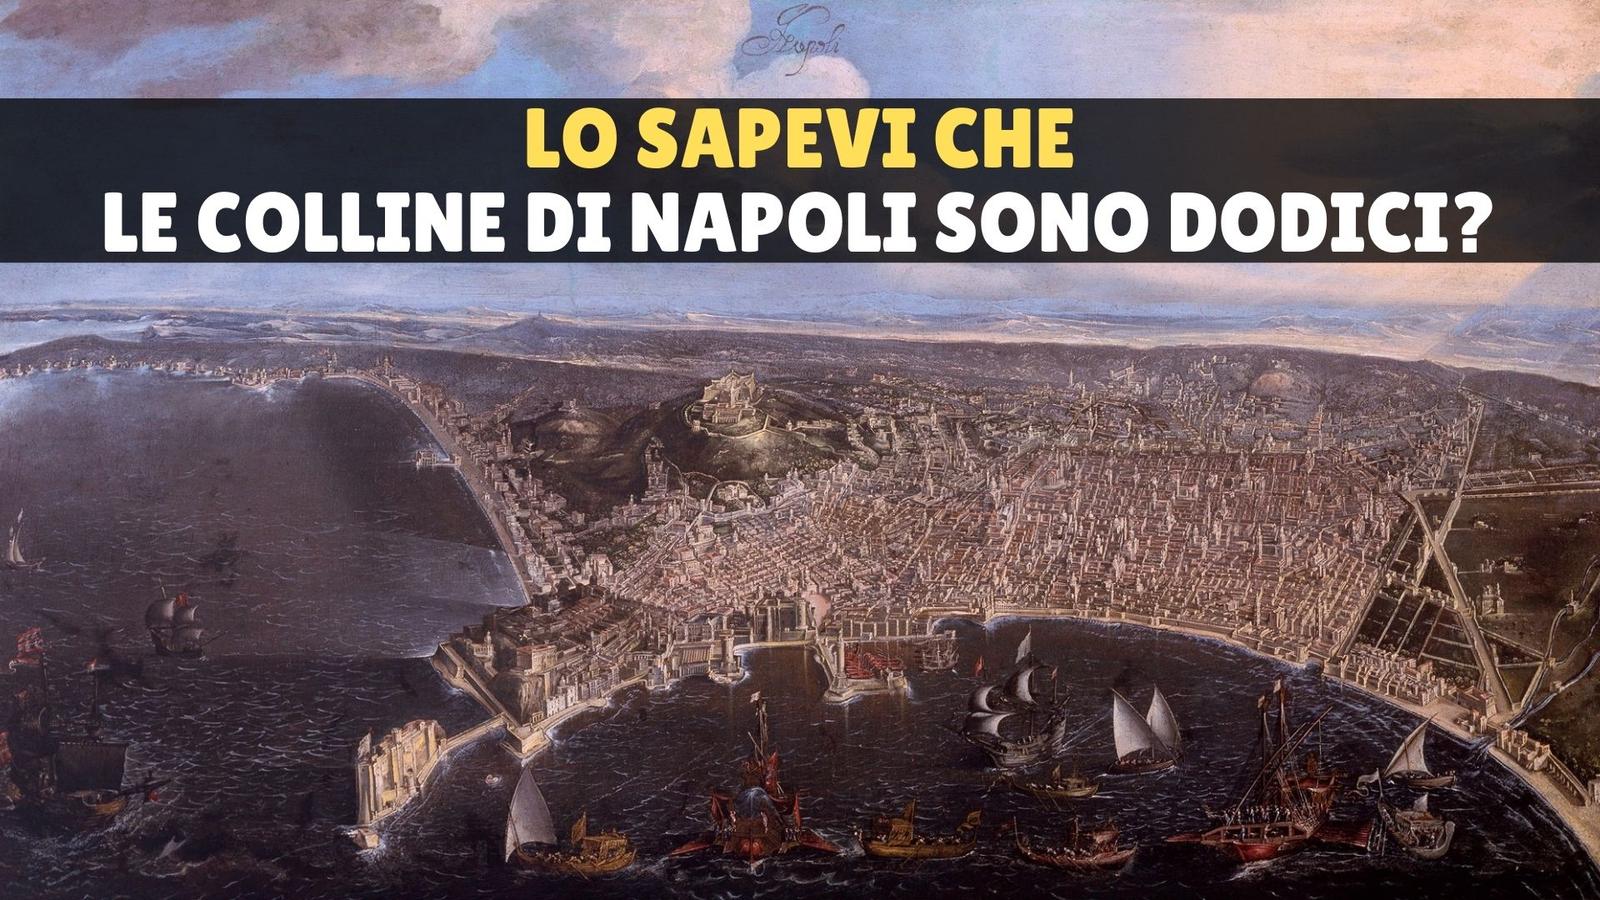 Le colline di Napoli sono 12: da Pizzofalcone al Vomero, la loro storia millenaria